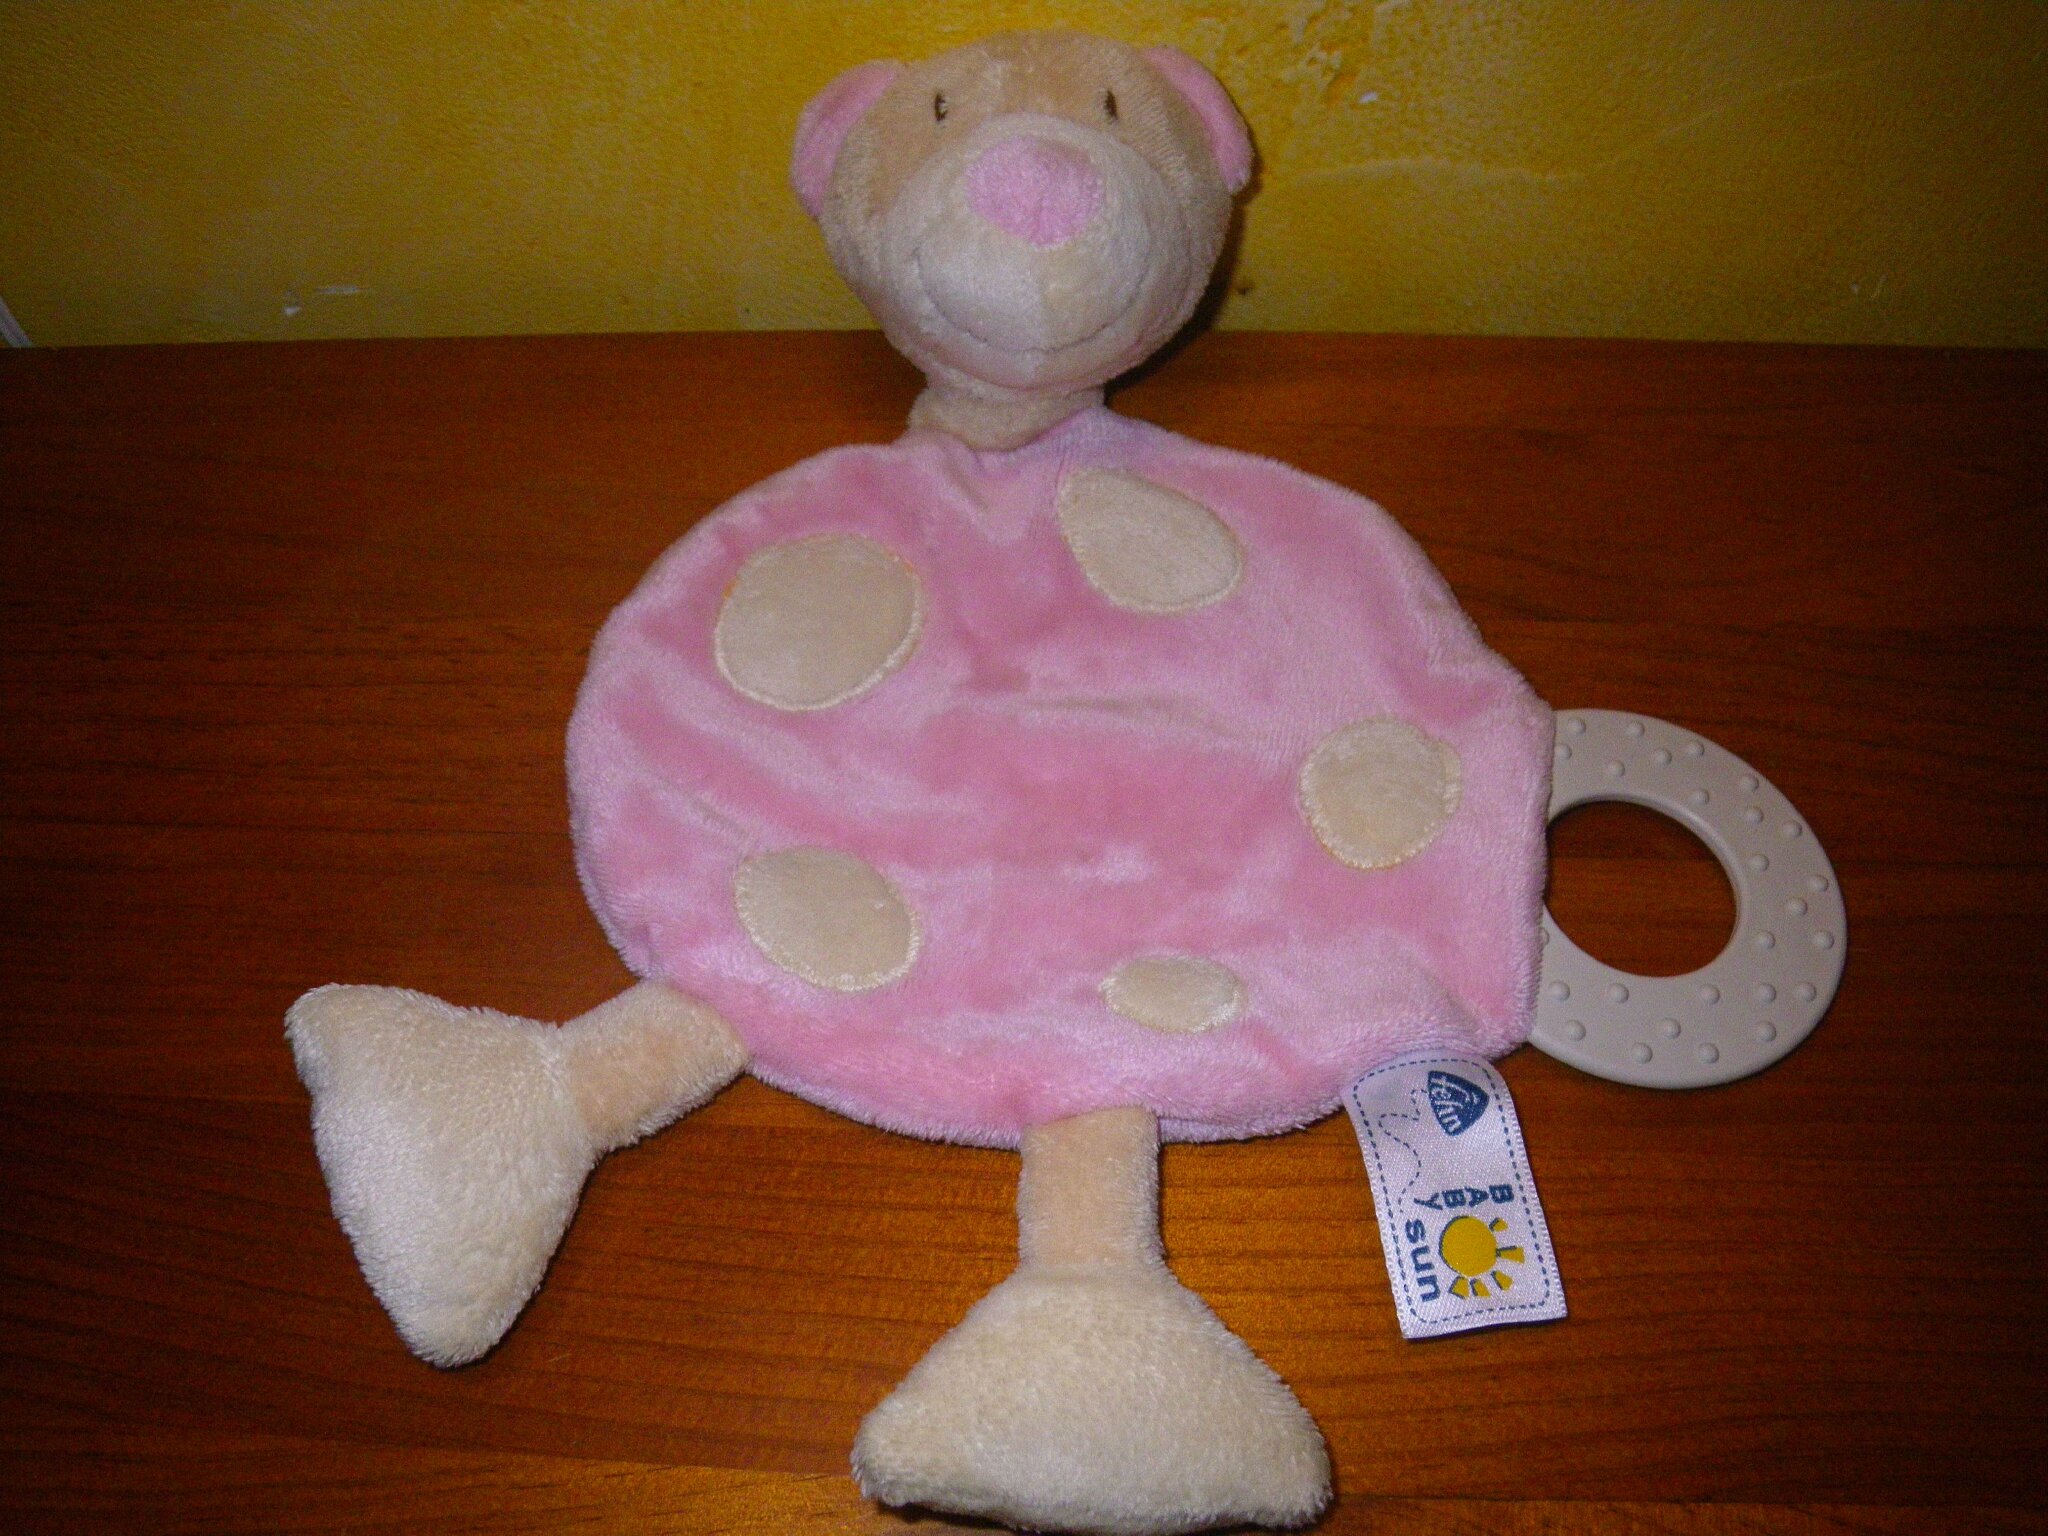 ours marque Babysun, doudou plat rose ronds beige clair, avec anneau de dentition. hochet dans la tête